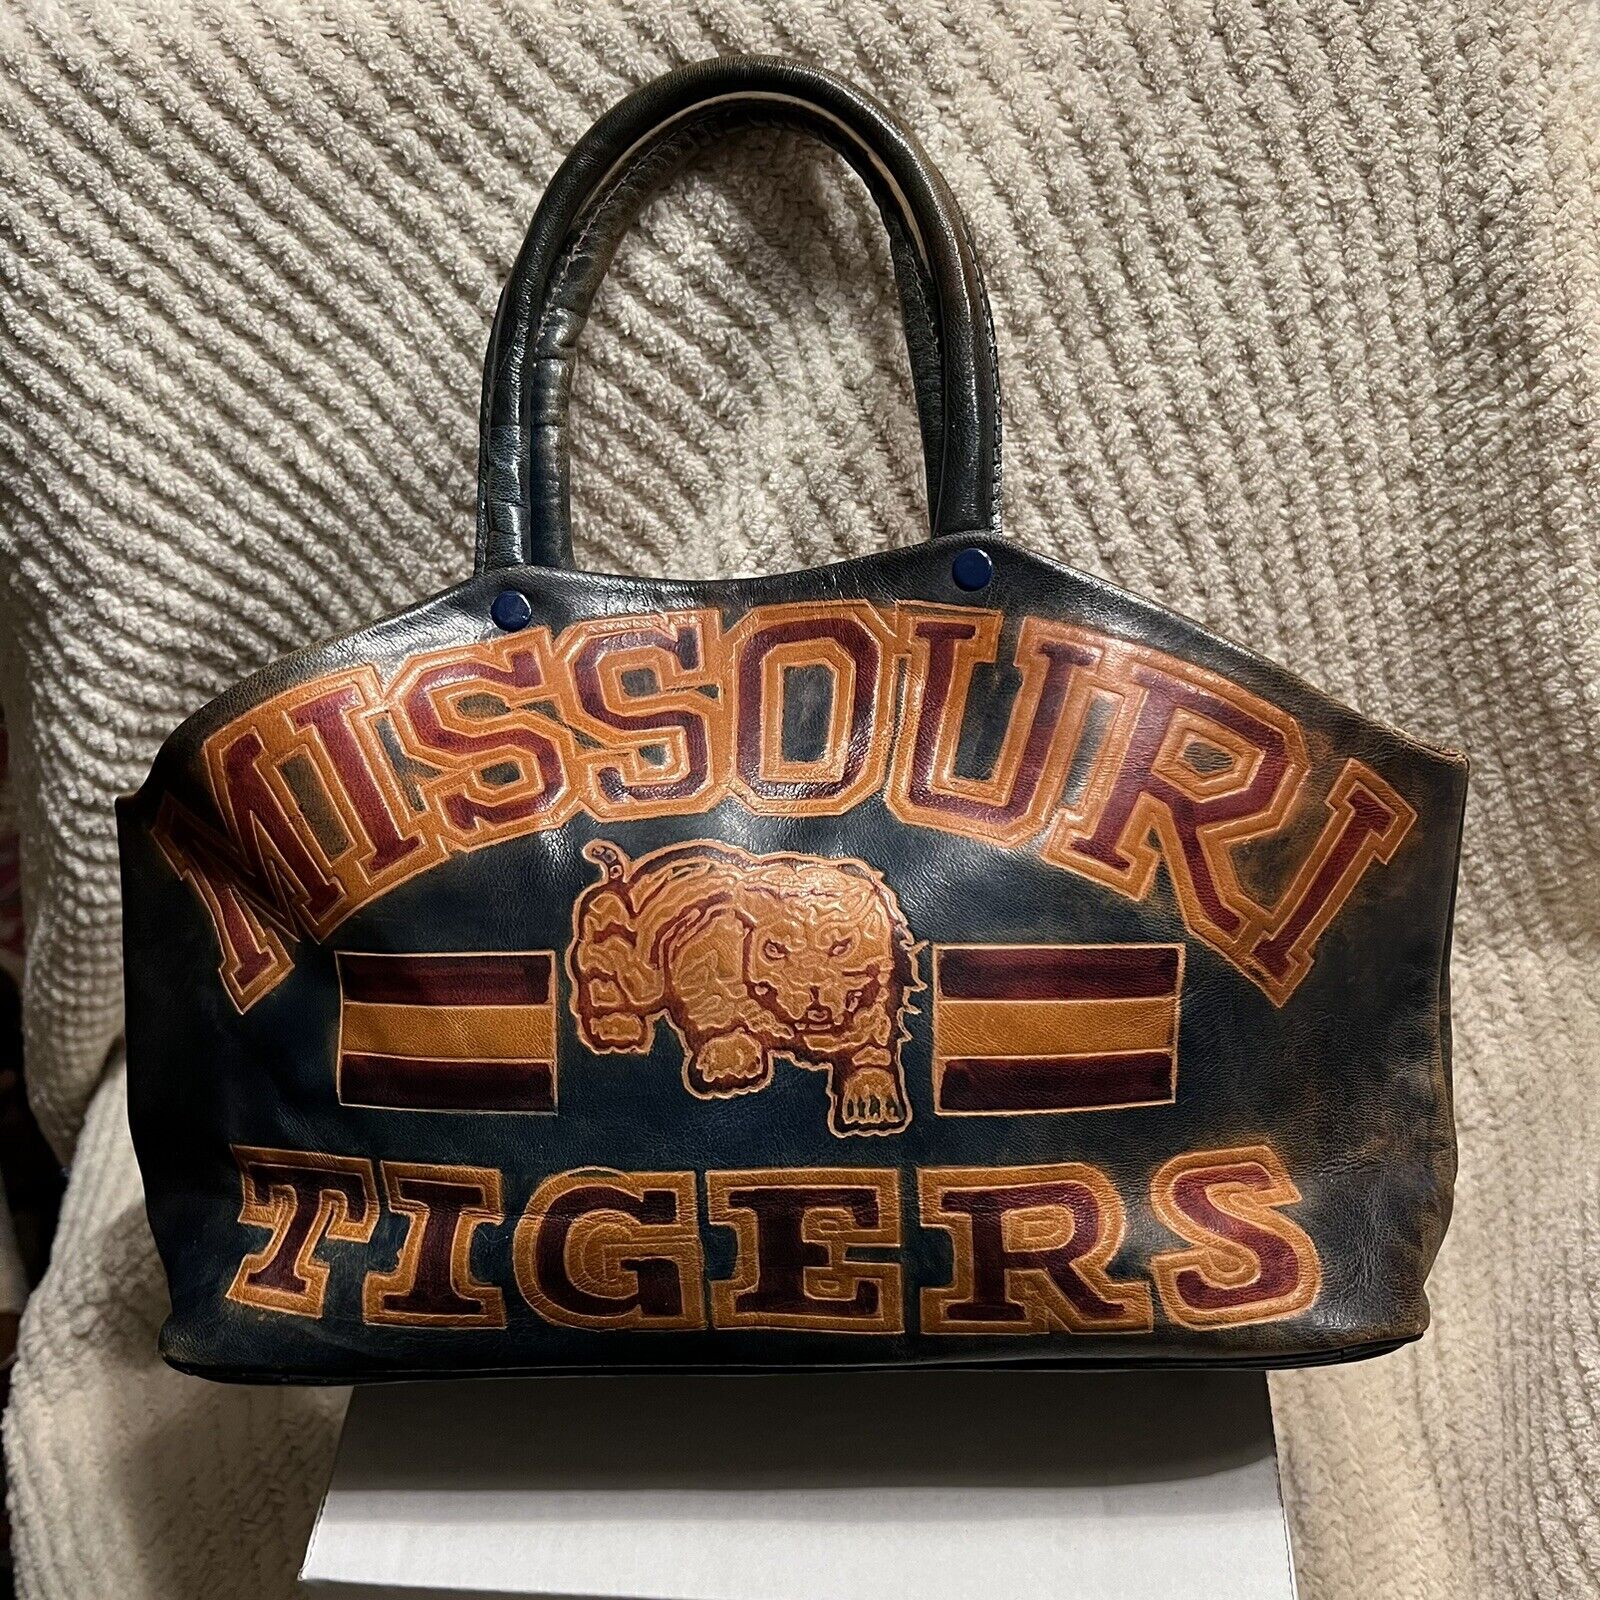 Vintage University of Missouri Tigers Leather Purse/Handbag